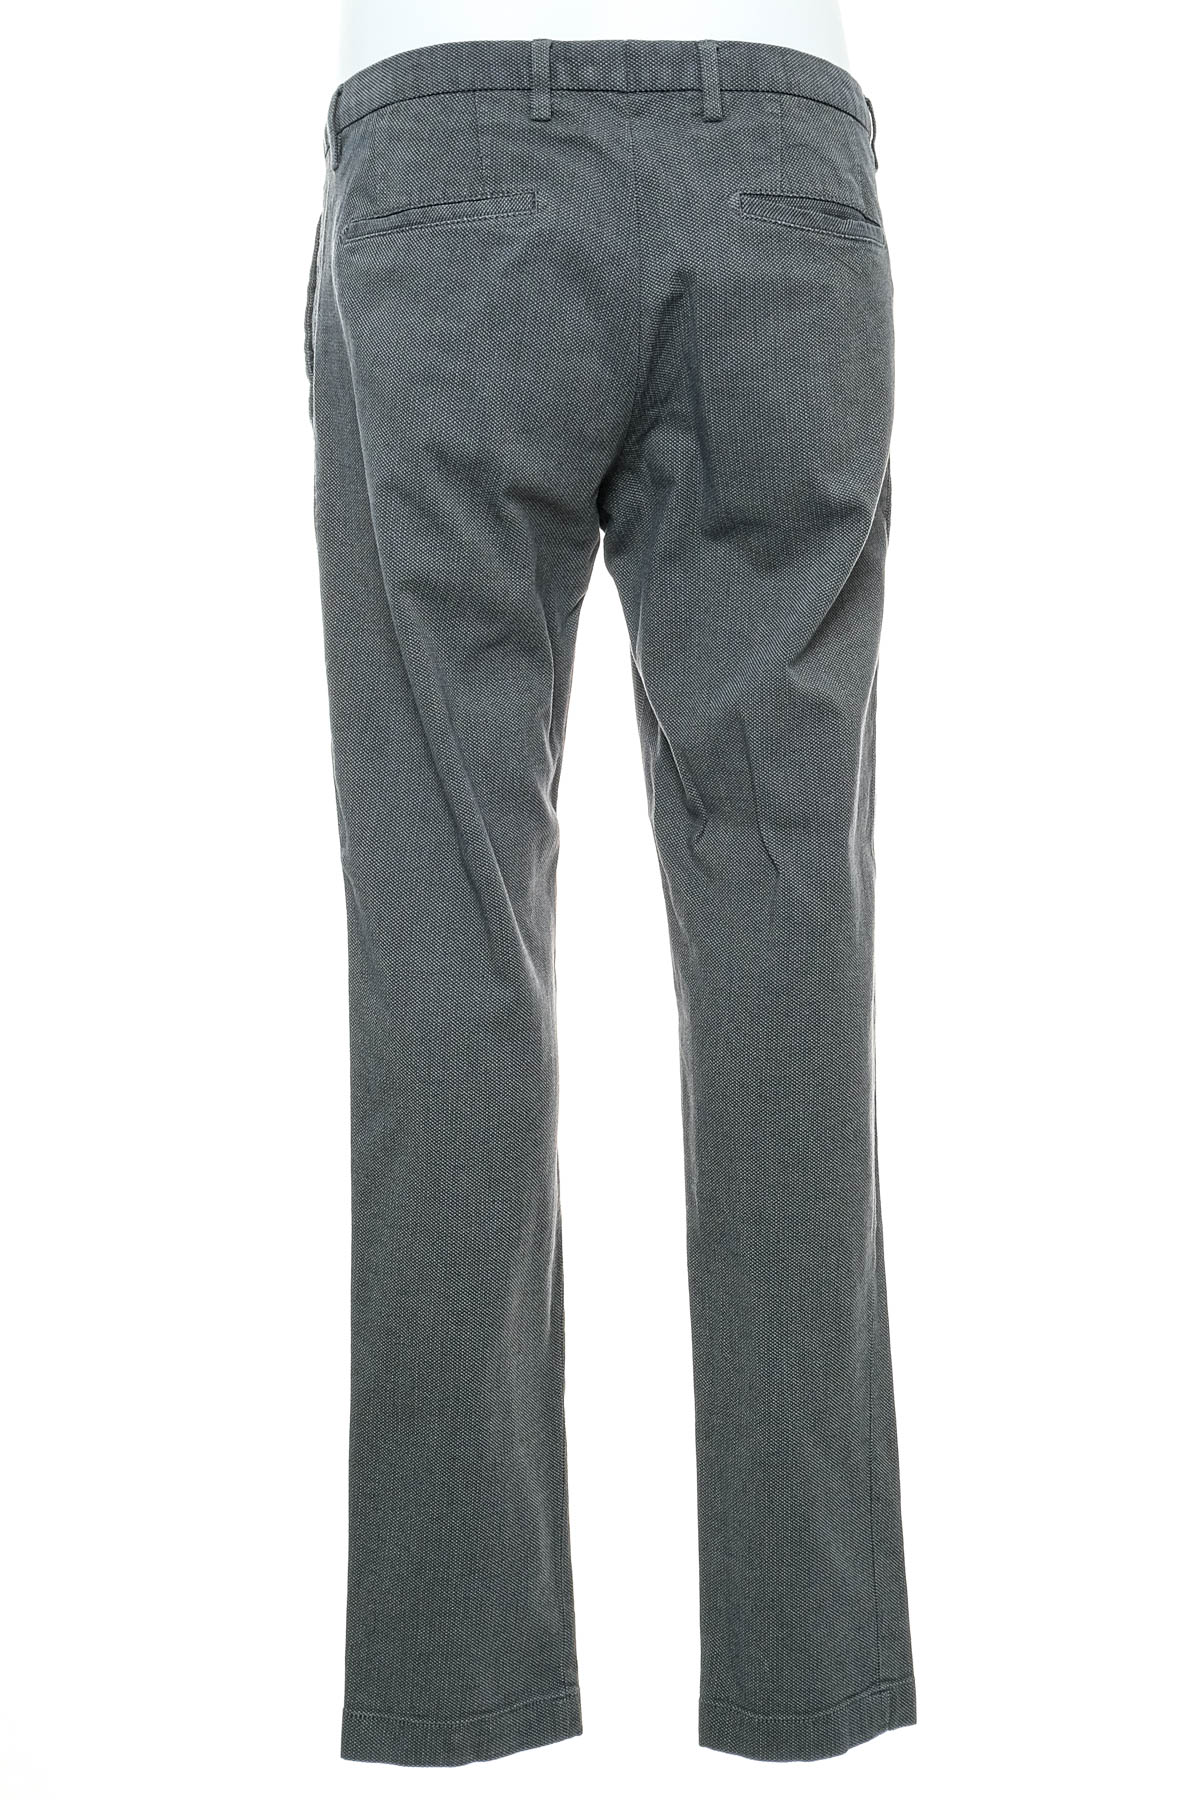 Pantalon pentru bărbați - CINQUE - 1